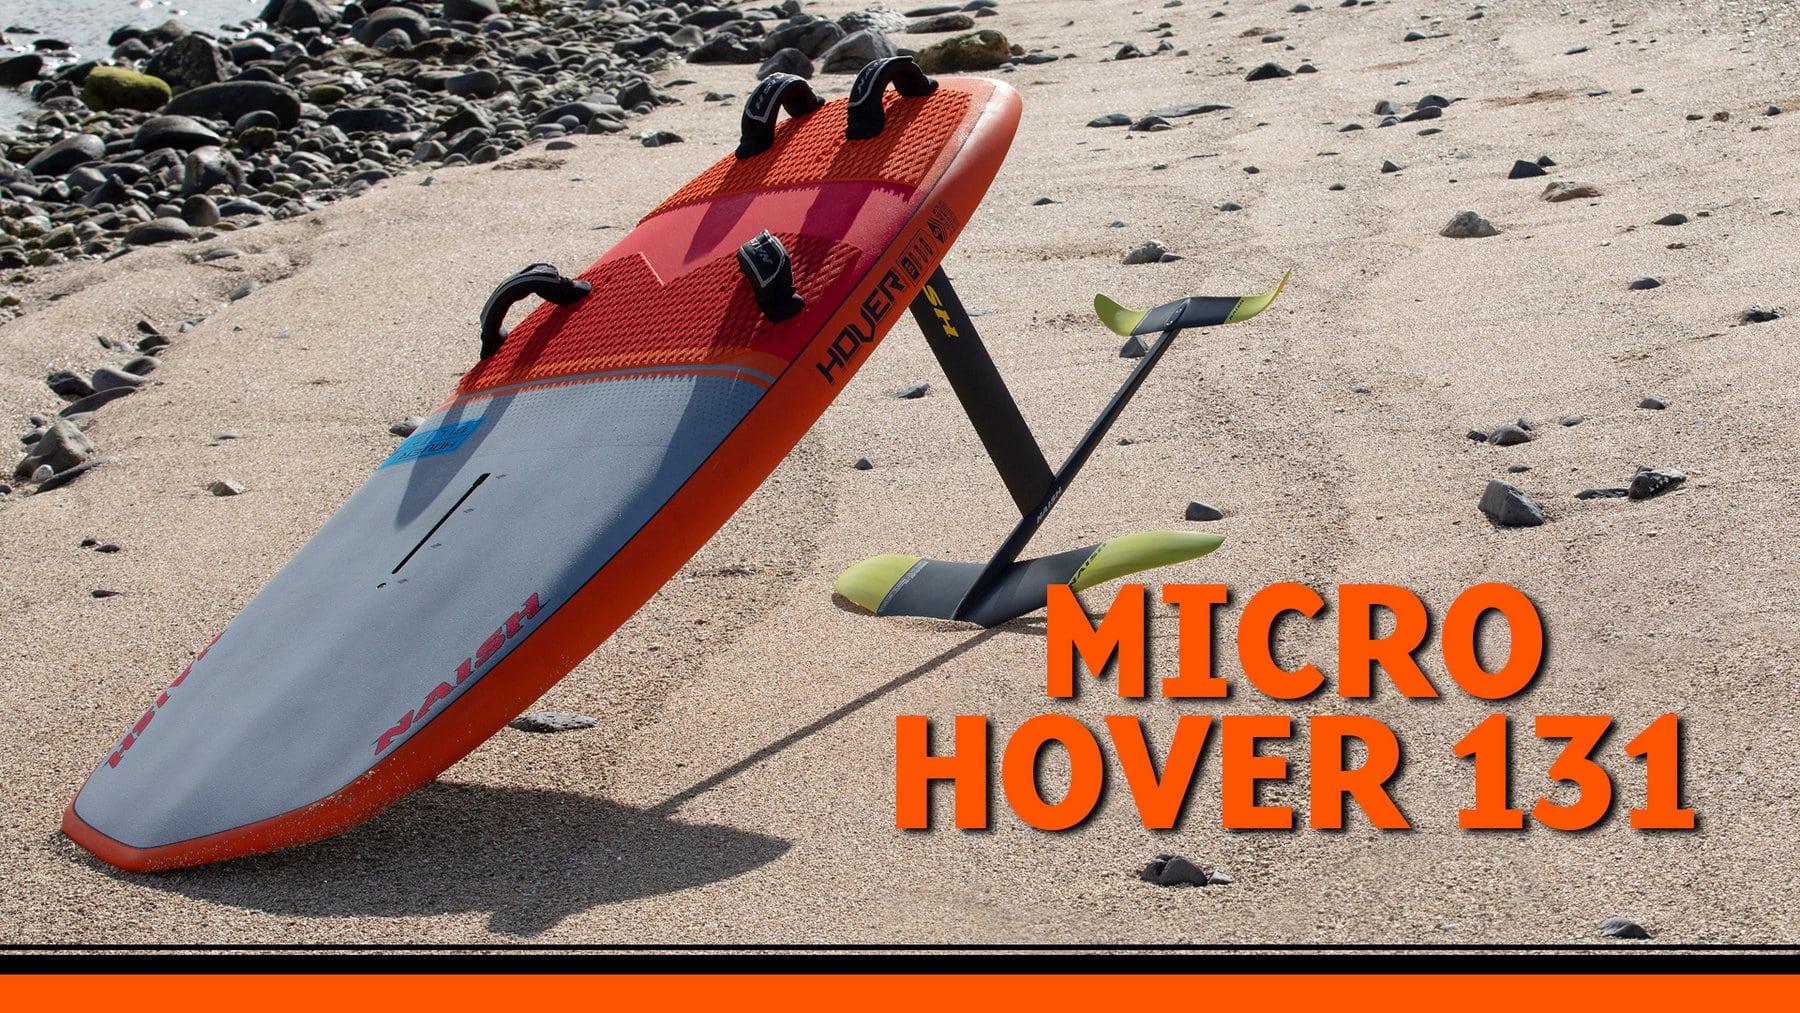 2020 Naish Micro Hover 131 Foil Windsurf board - Naish.com